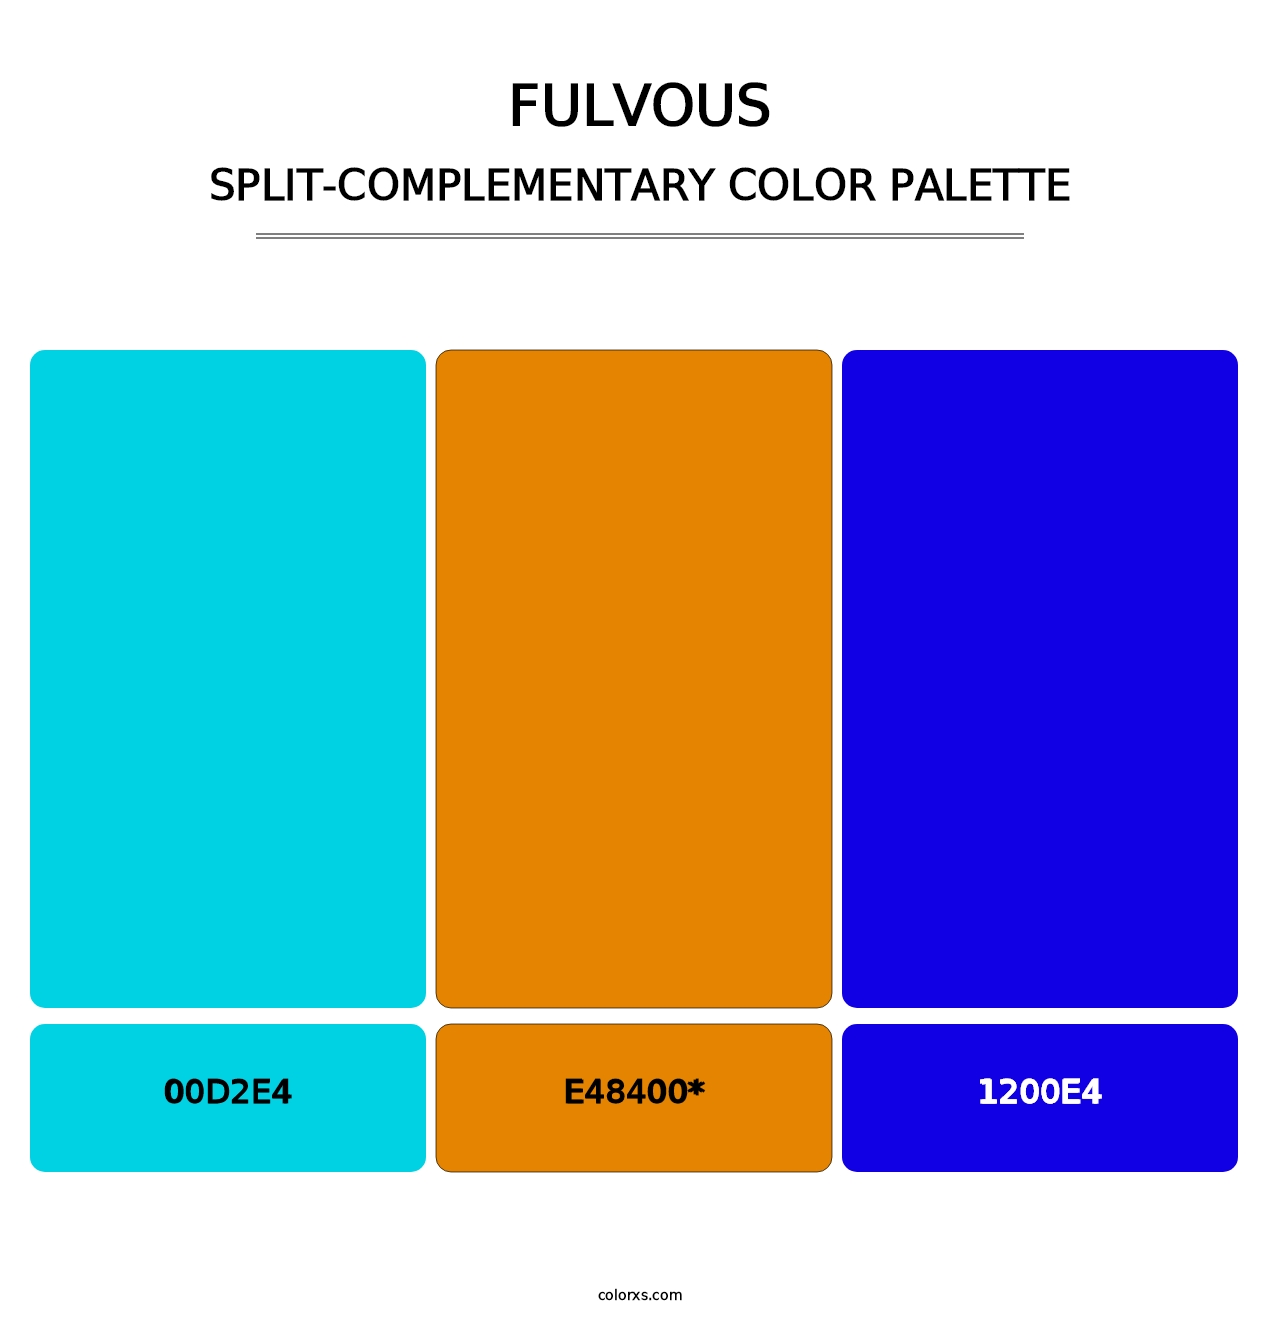 Fulvous - Split-Complementary Color Palette